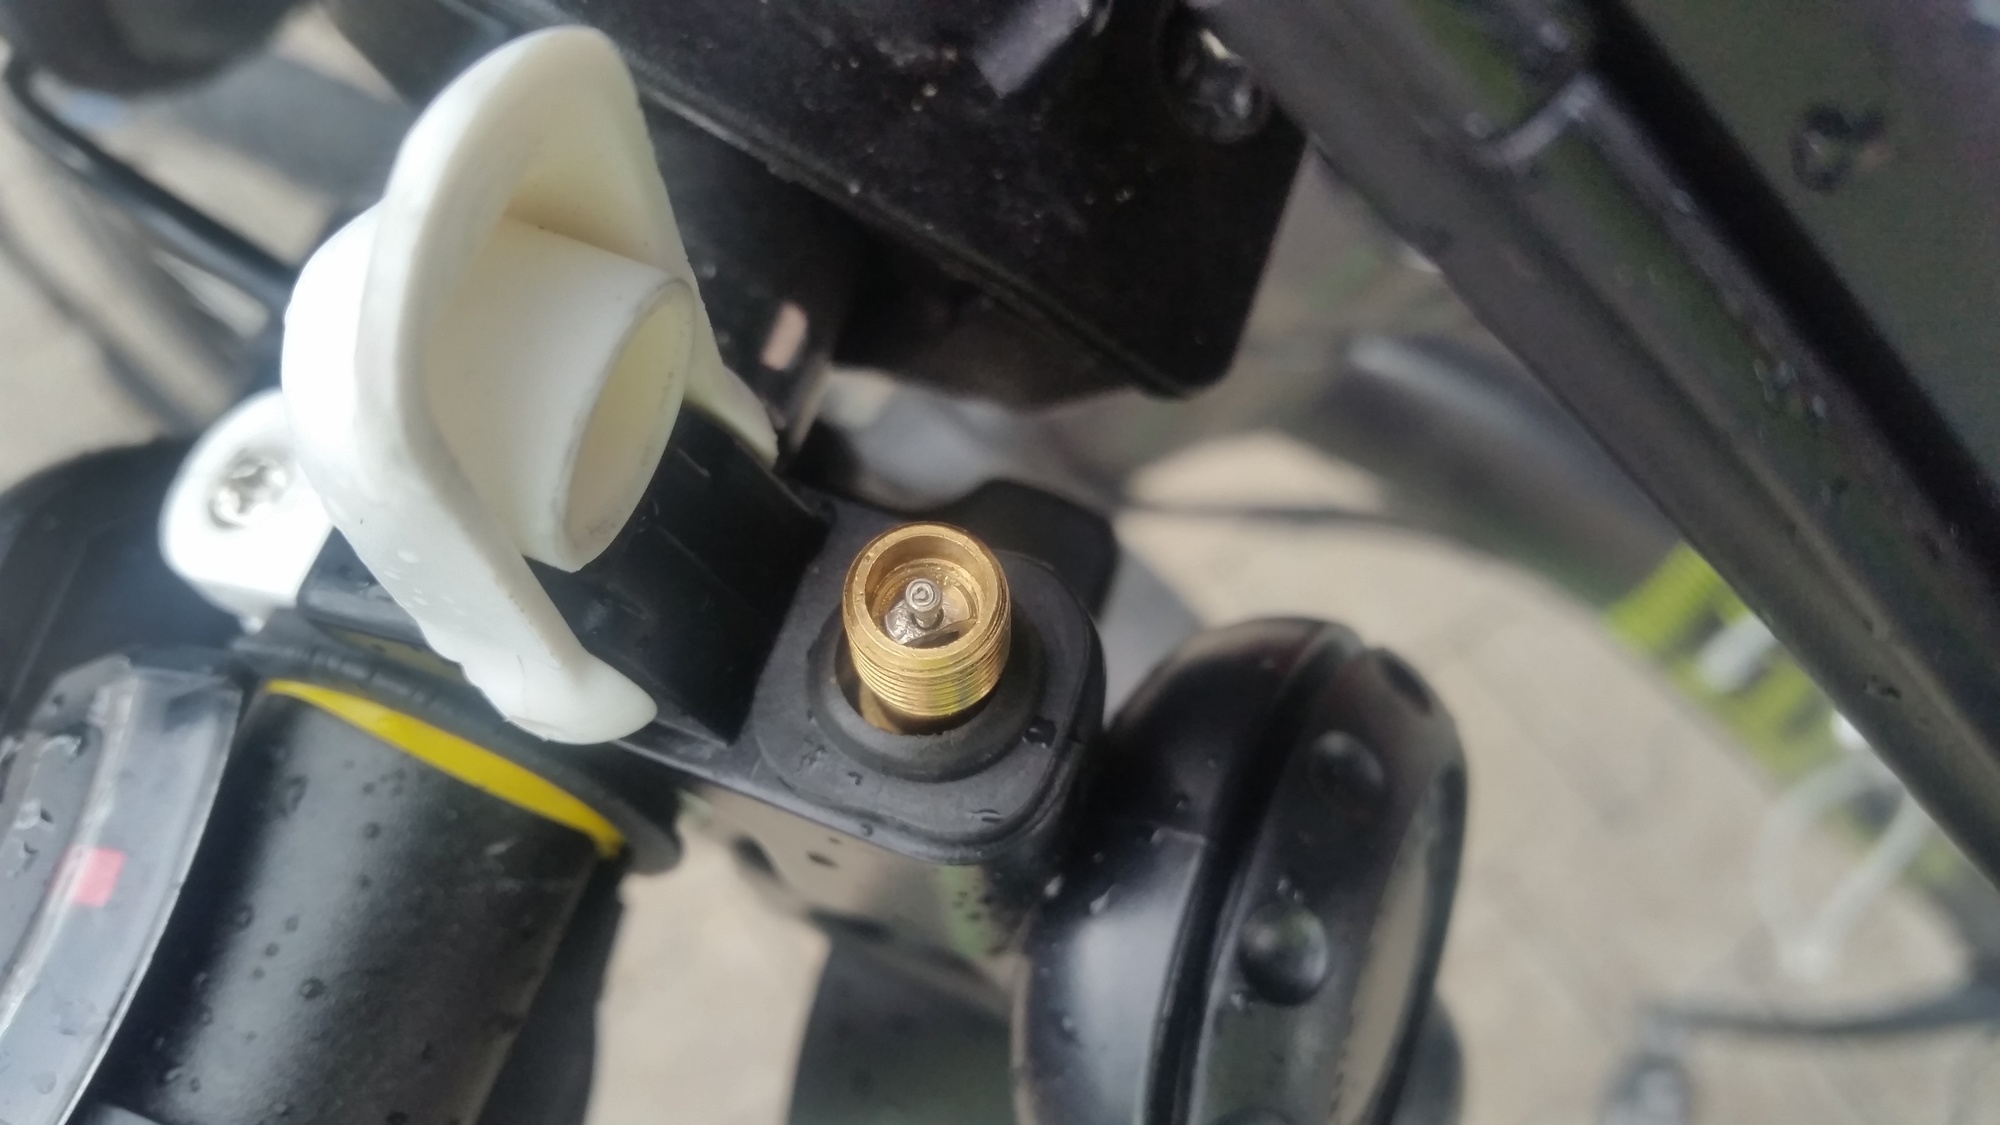 AirZound – Ein Bericht über eine mit Druckluft betriebene Hupe fürs Fahrrad  - Natenoms Blog